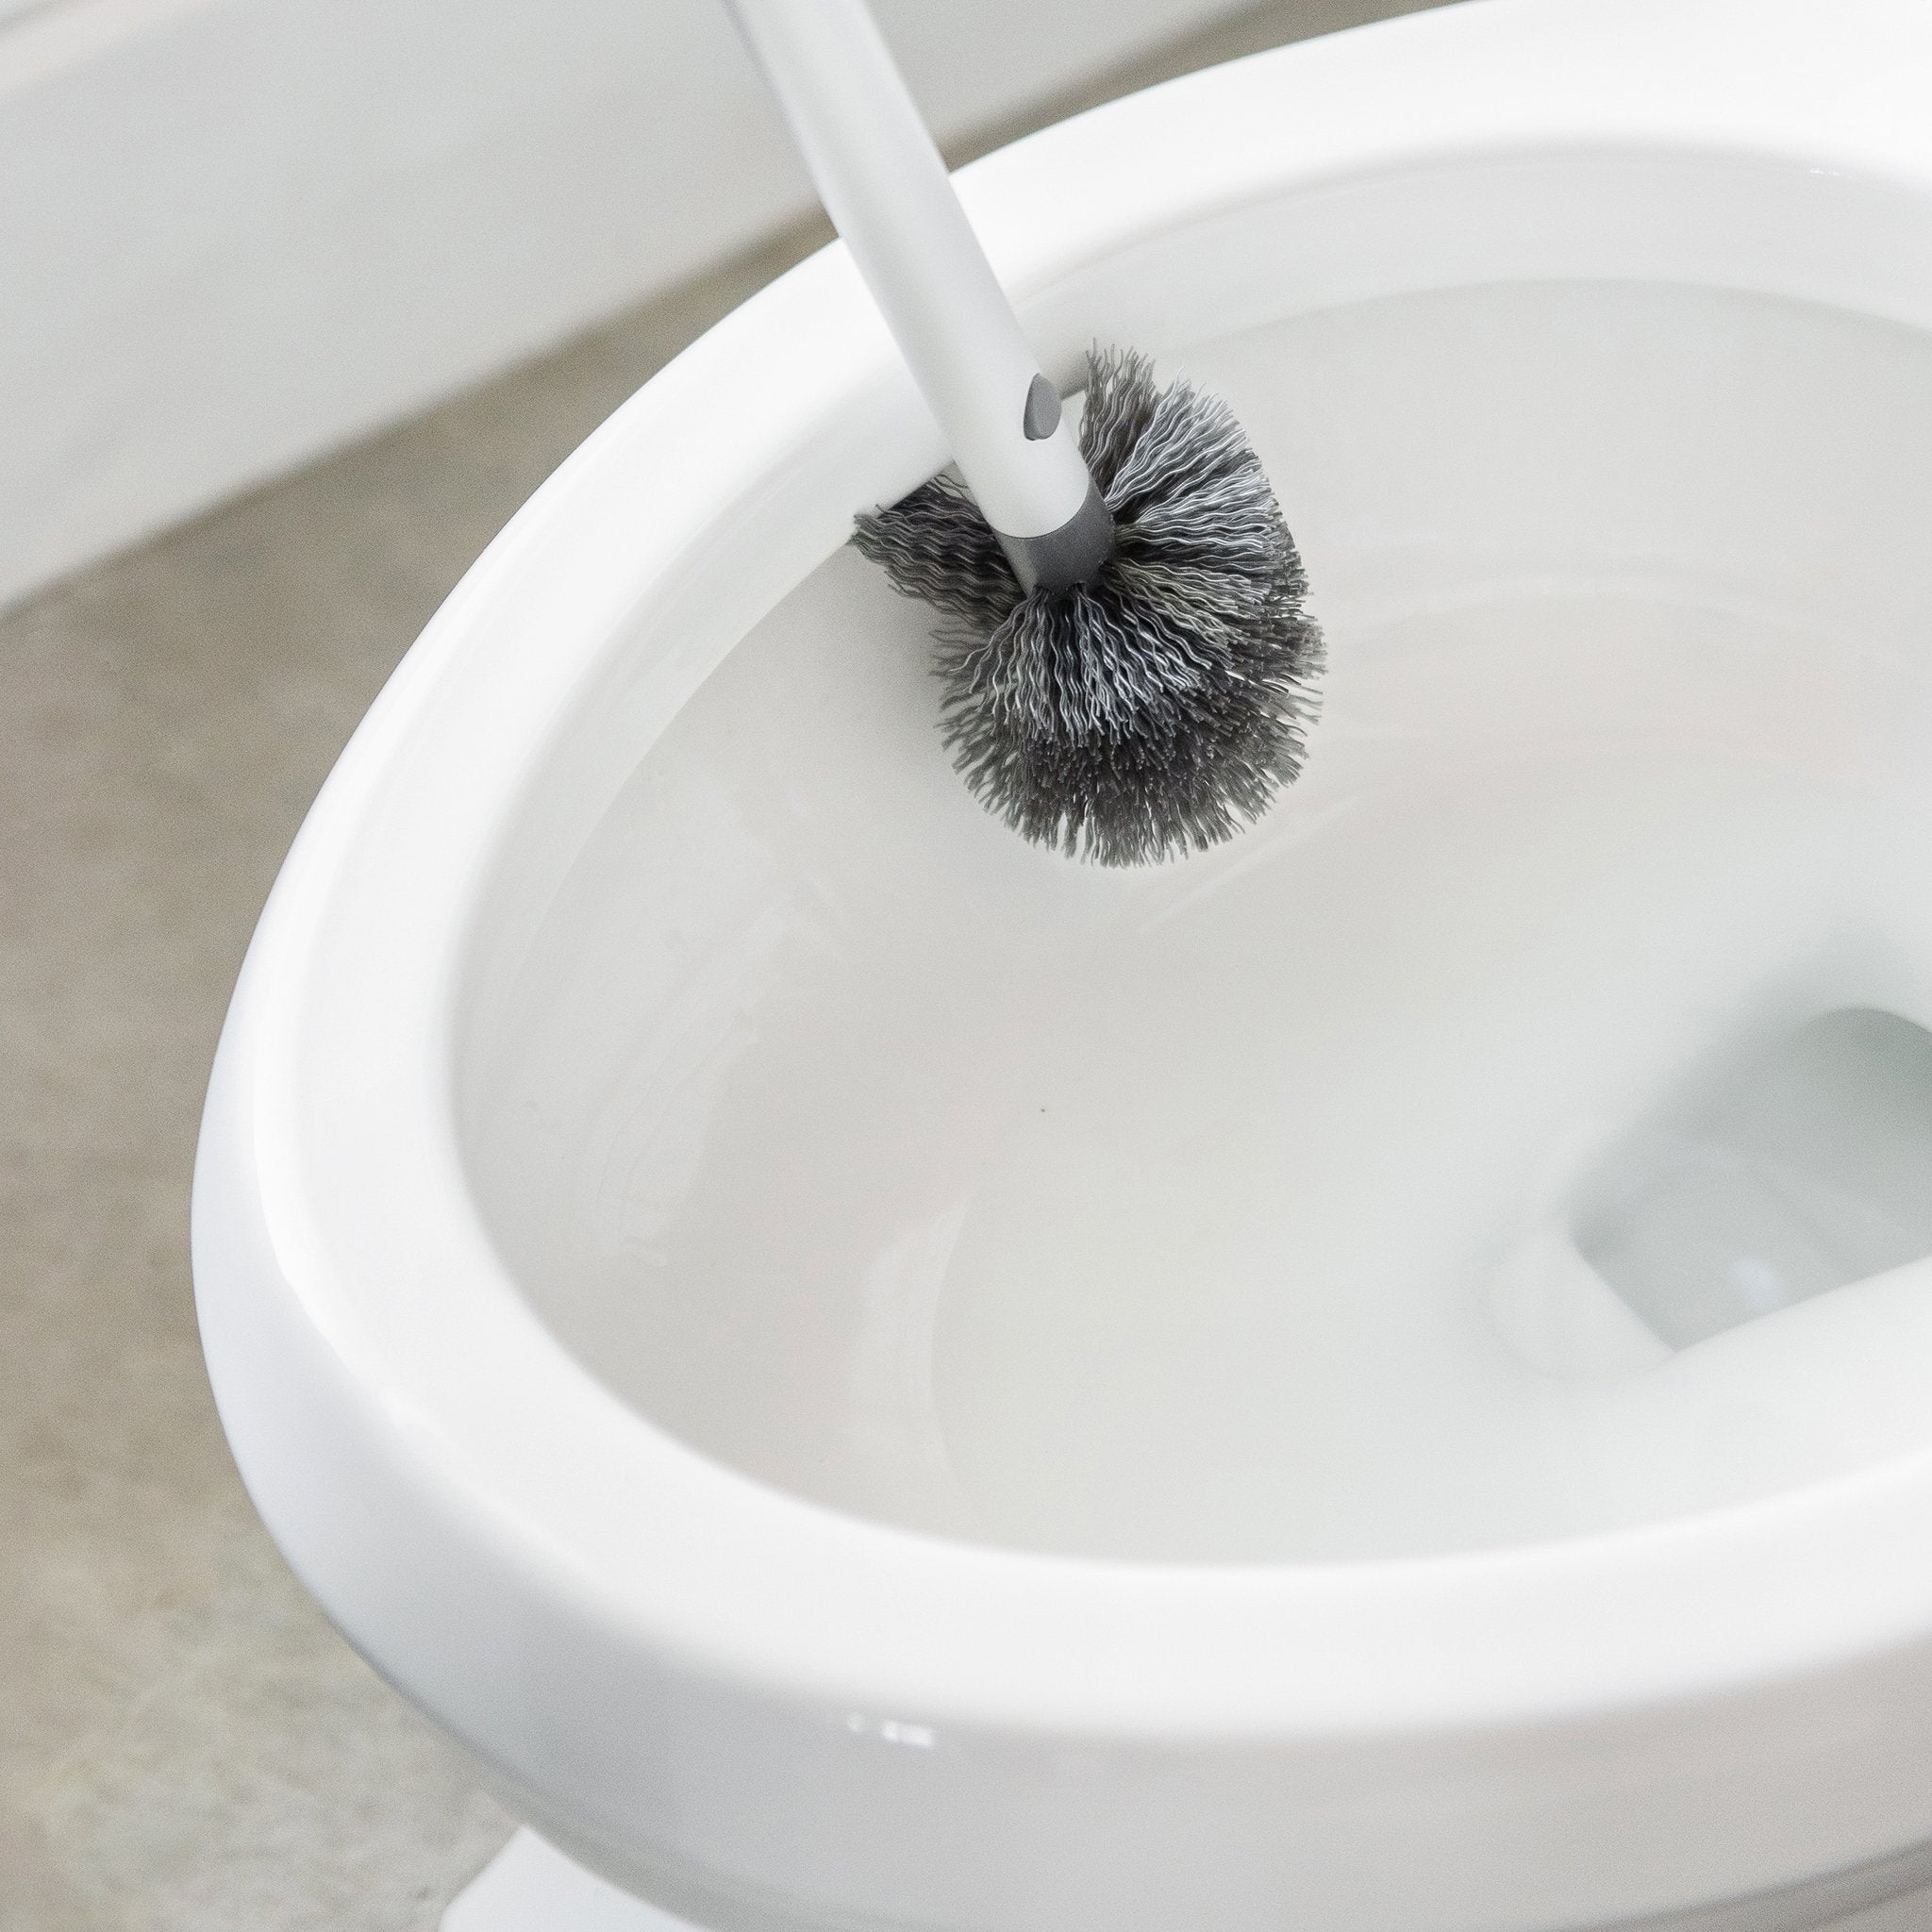 Toilet Brush Heads – Greenland